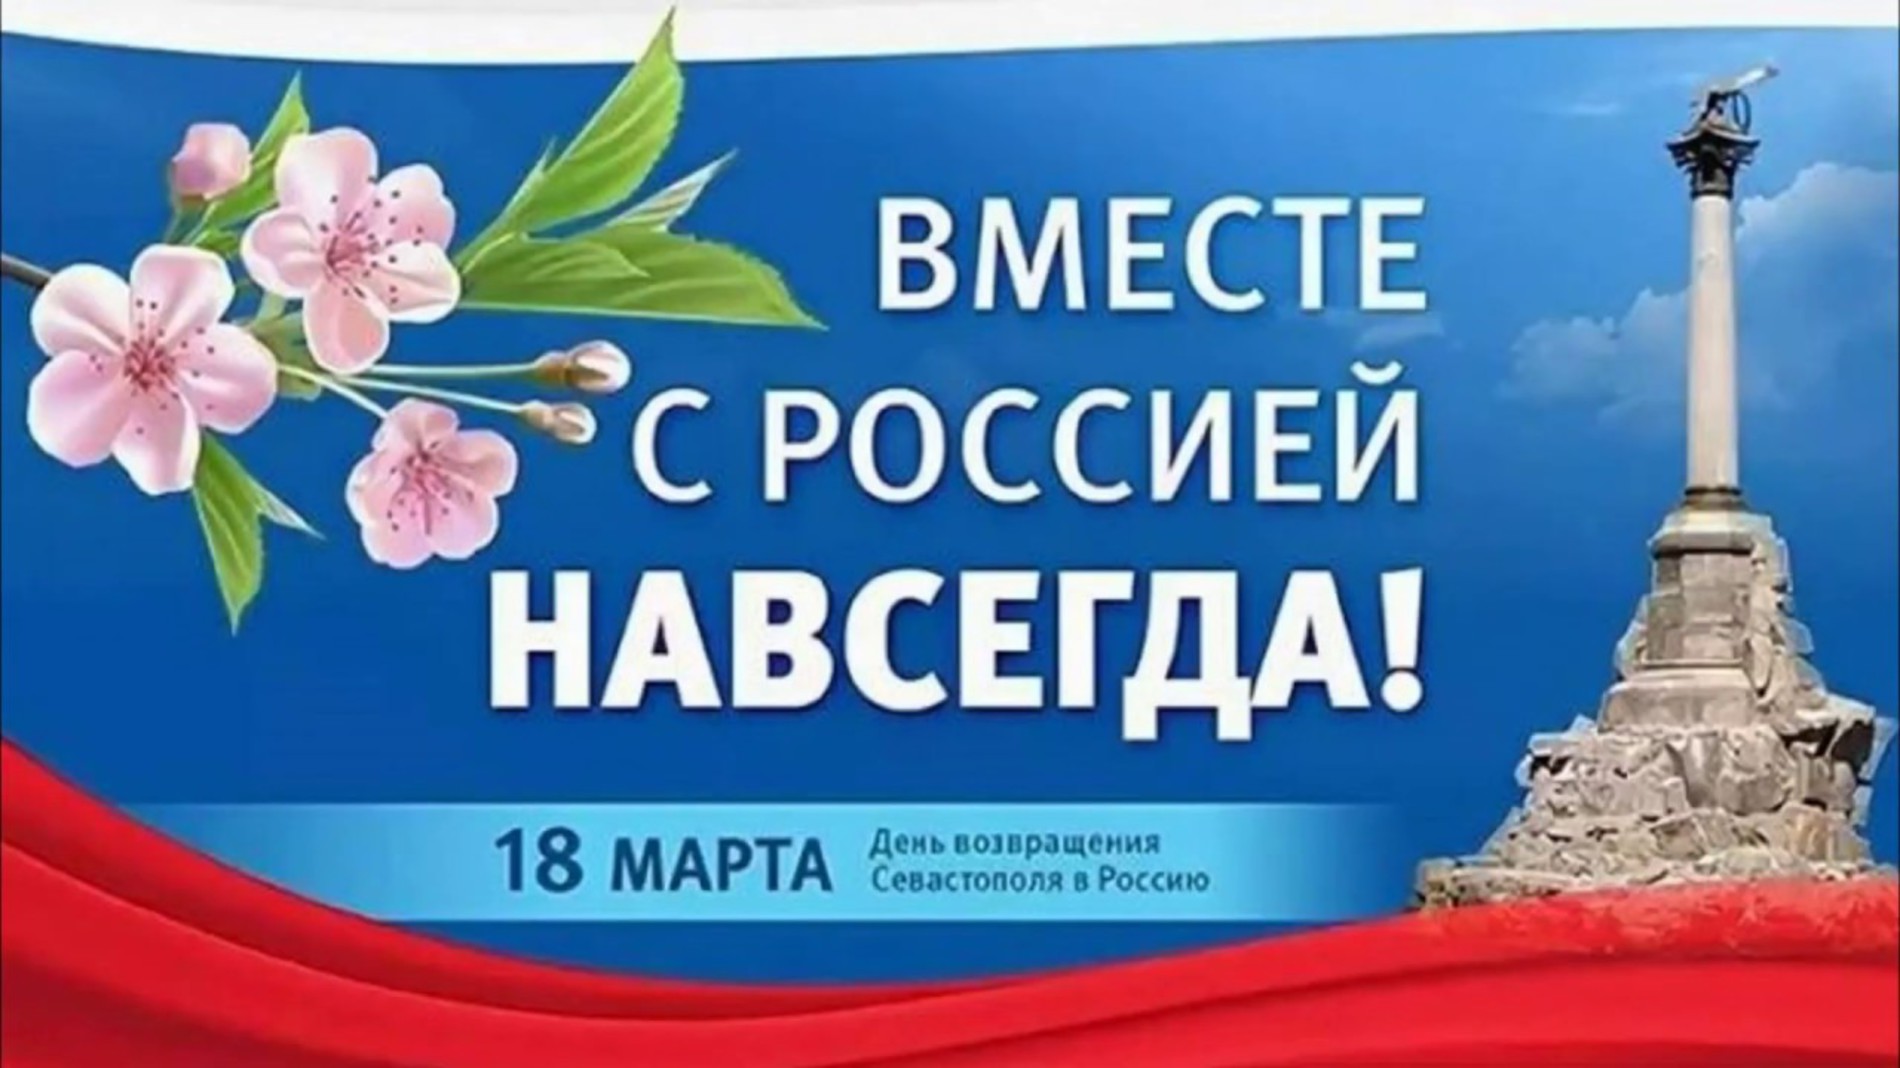 18 Марта день воссоединения Крыма